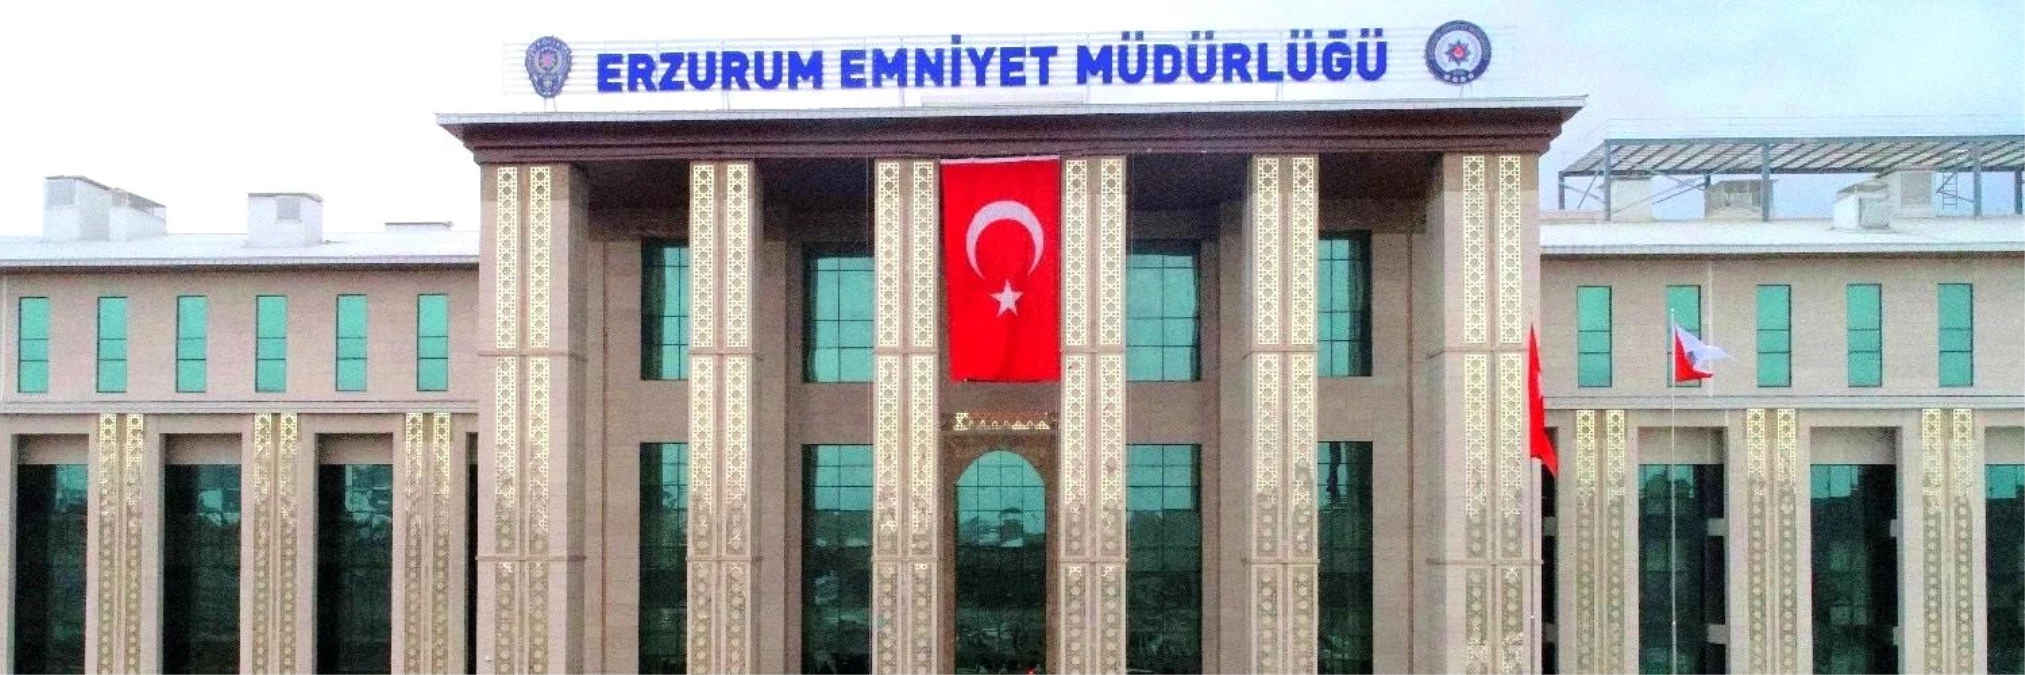 Erzurum'da FETÖ/PDY Silahlı Terör Örgütüne Yönelik Soruşturma